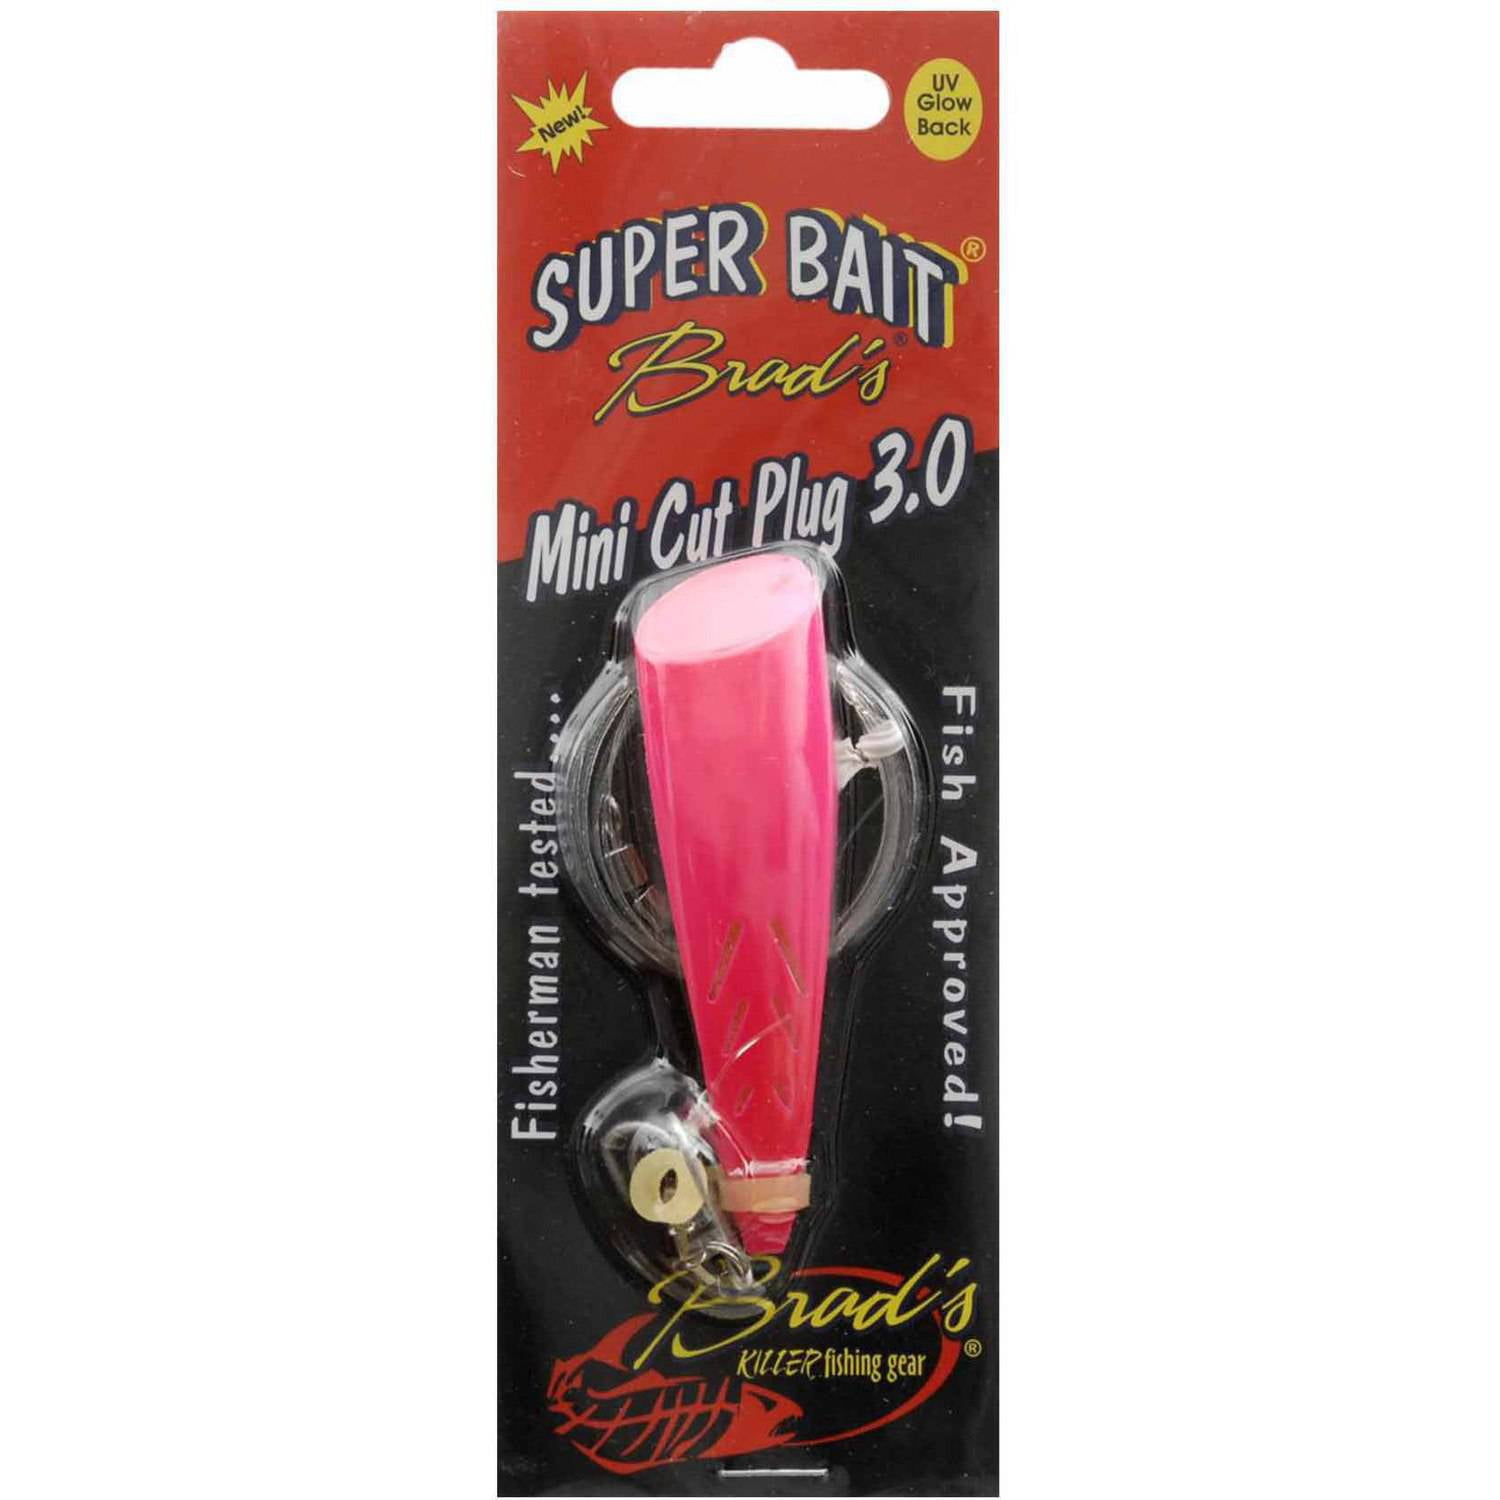 B.S. Fish Tales Super Bait Cut Plug 3, Hot Pink 